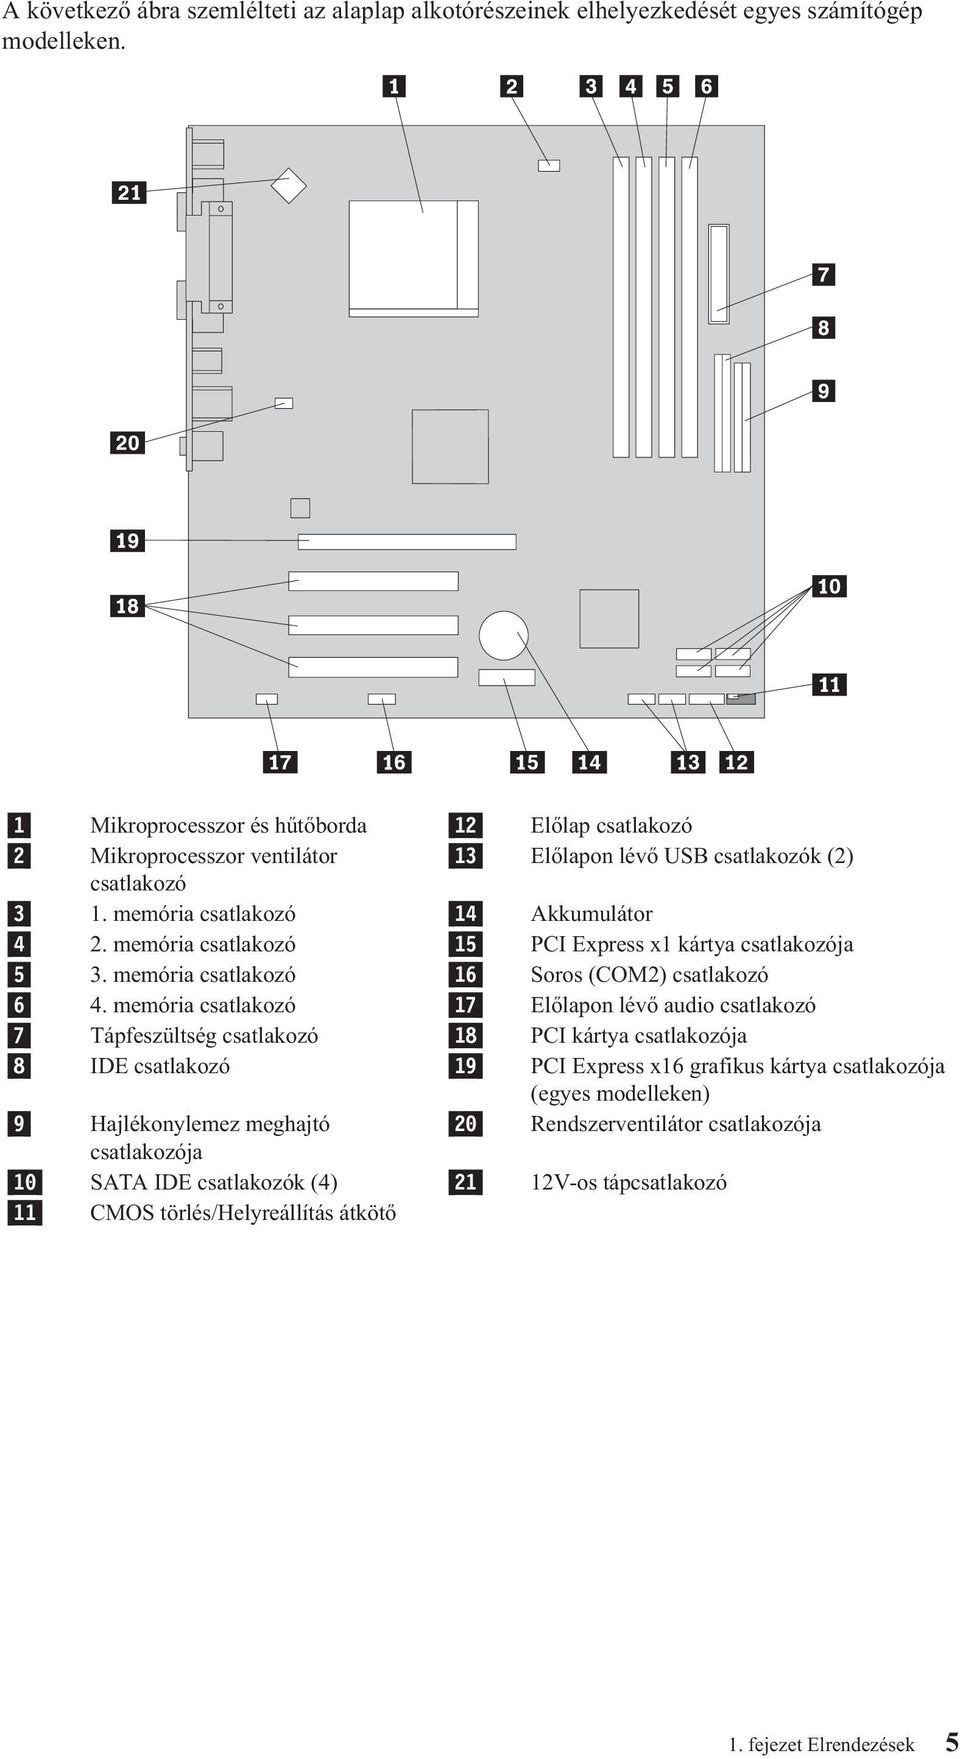 memória csatlakozó 15 PCI Express x1 kártya csatlakozója 5 3. memória csatlakozó 16 Soros (COM2) csatlakozó 6 4.